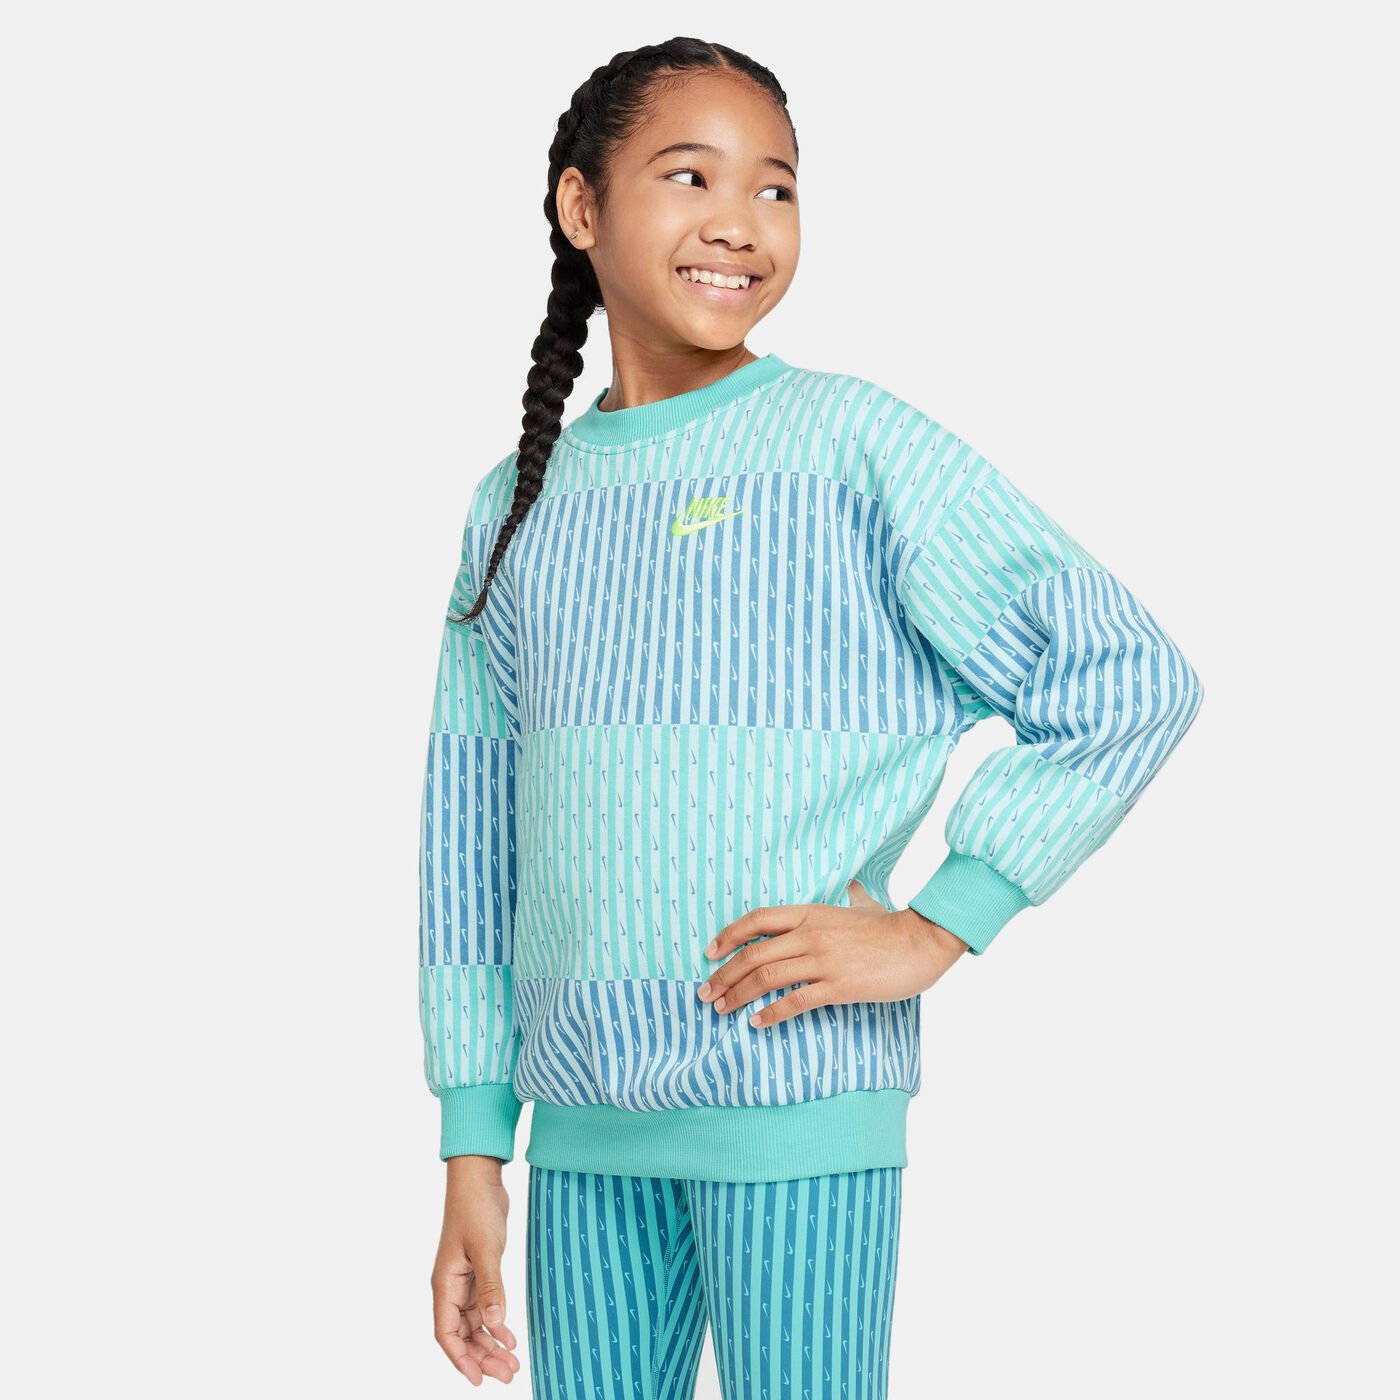 Kids' Sportswear Club Fleece Sweatshirt (Older Kids)